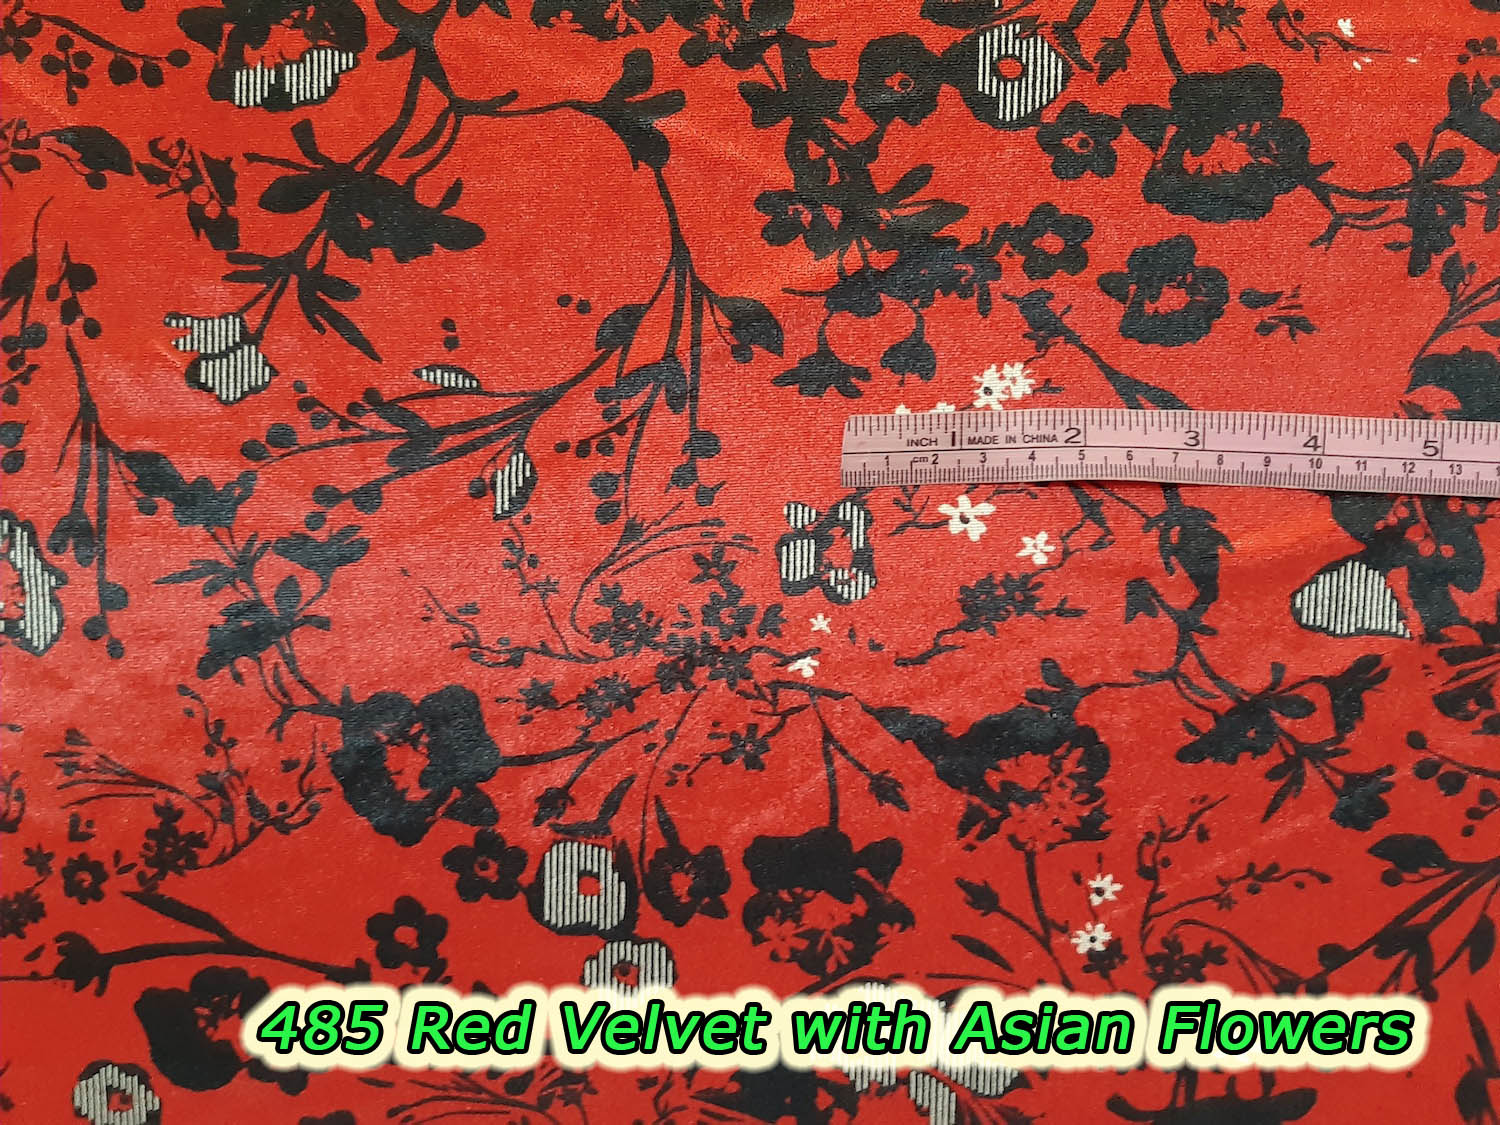 485 Red Velvet with Asian Flowers